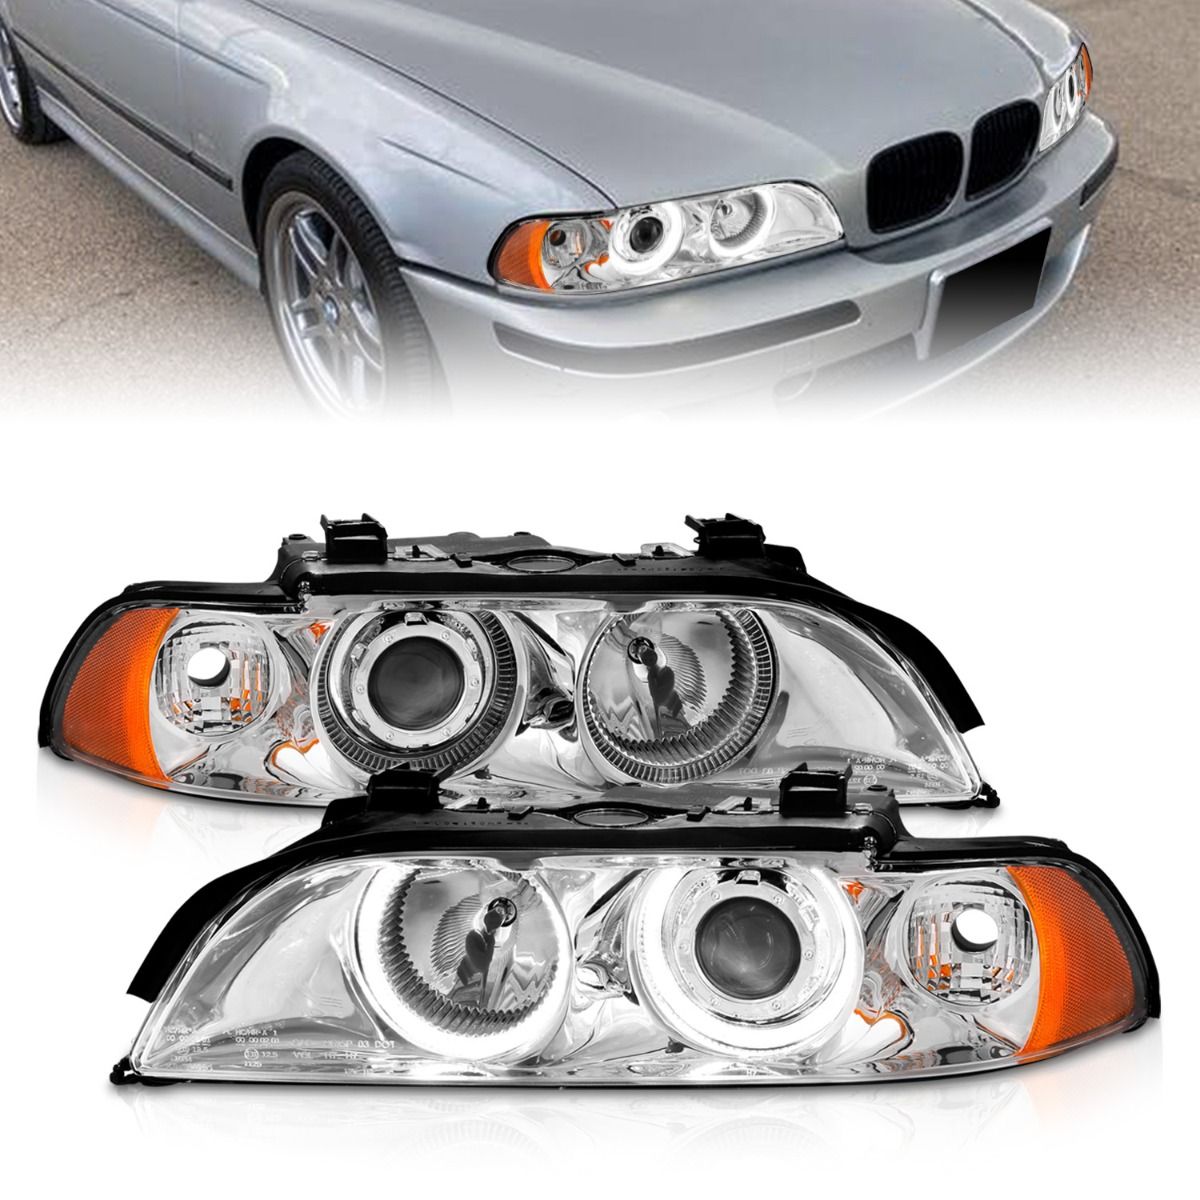 BMW 5 Series Headlights, 5 Series Headlights,  BMW Headlights,97-01 BMW Headlights, Anzo Headlights, Headlights, Chrome Headlights, BMW 5 Series, 5 Series Headlights,